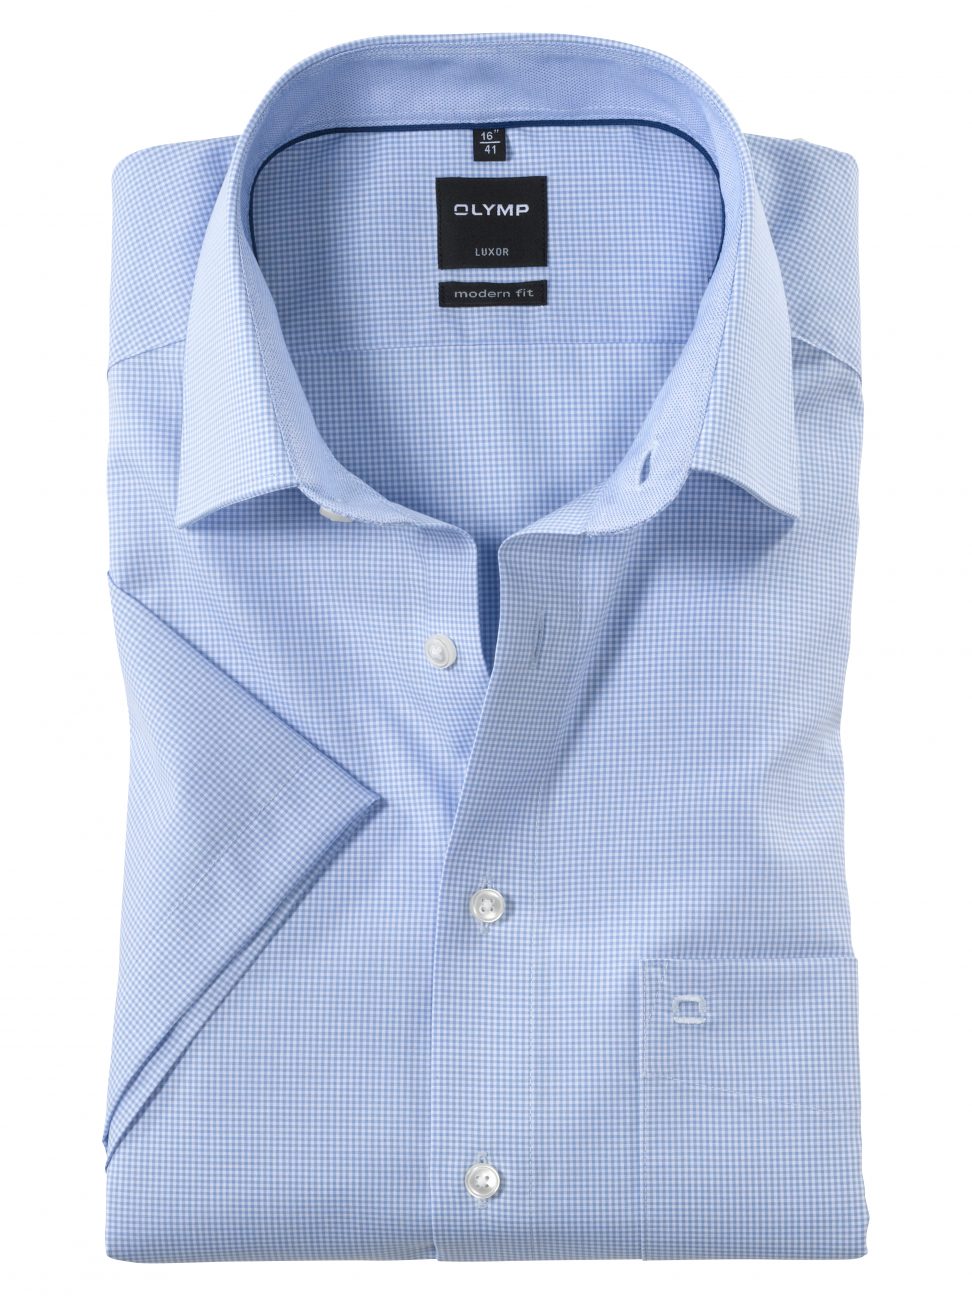 Koszula OLYMP Luxor, modern fit, błękitna kratka / New Kent / 33901211 krótki rękaw